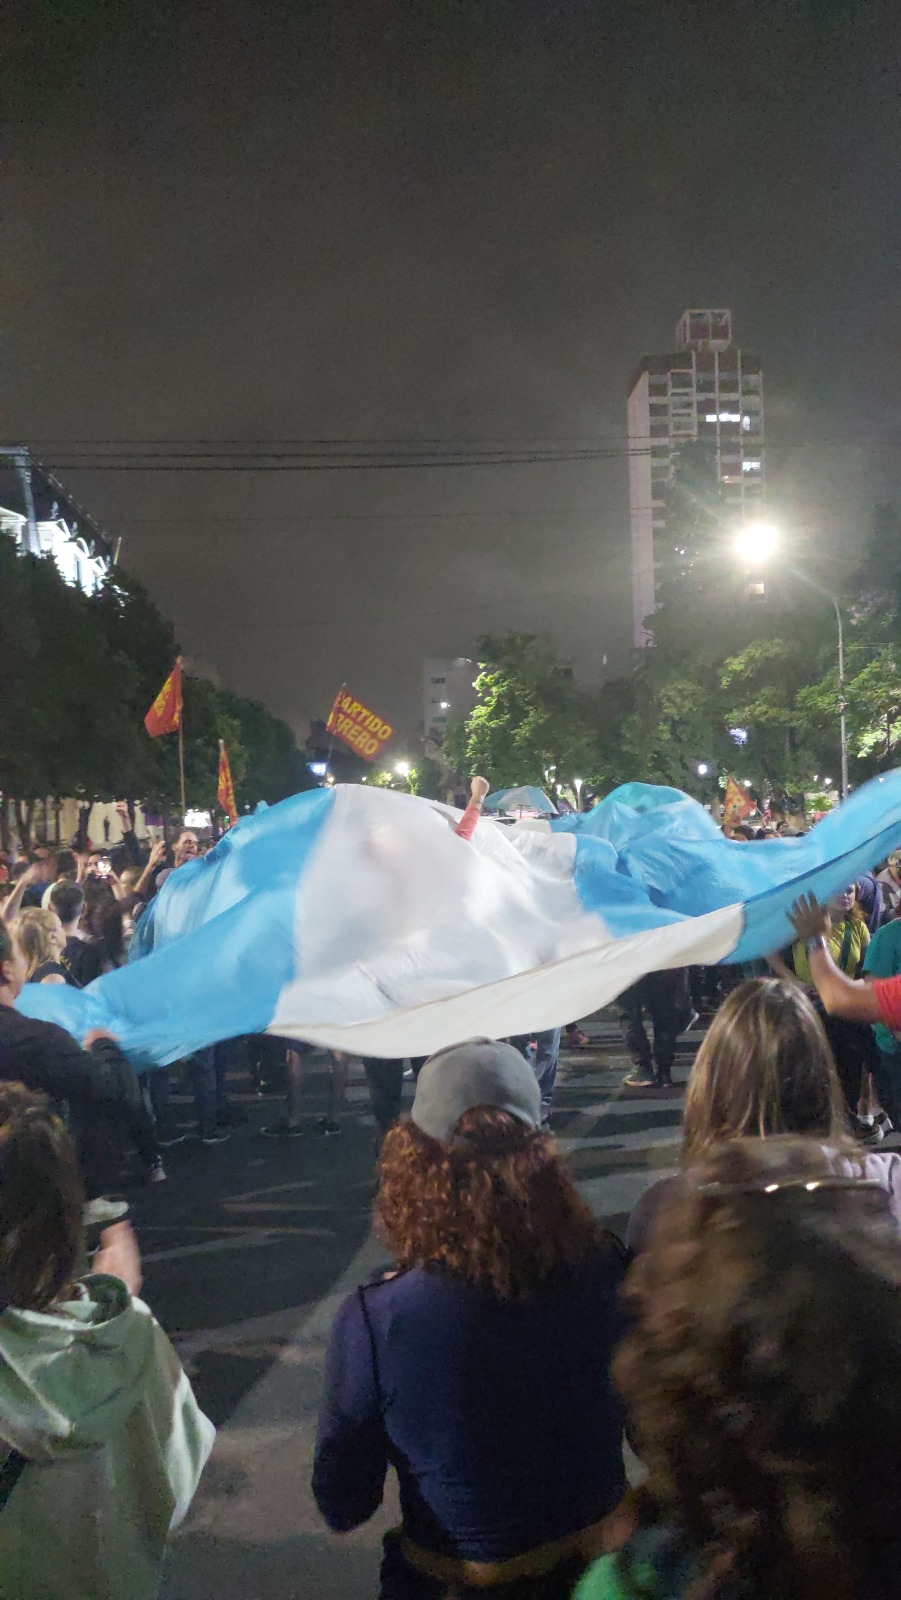 Una bandera de unos 5 mts. de largo fue flameada durante la manifestación.